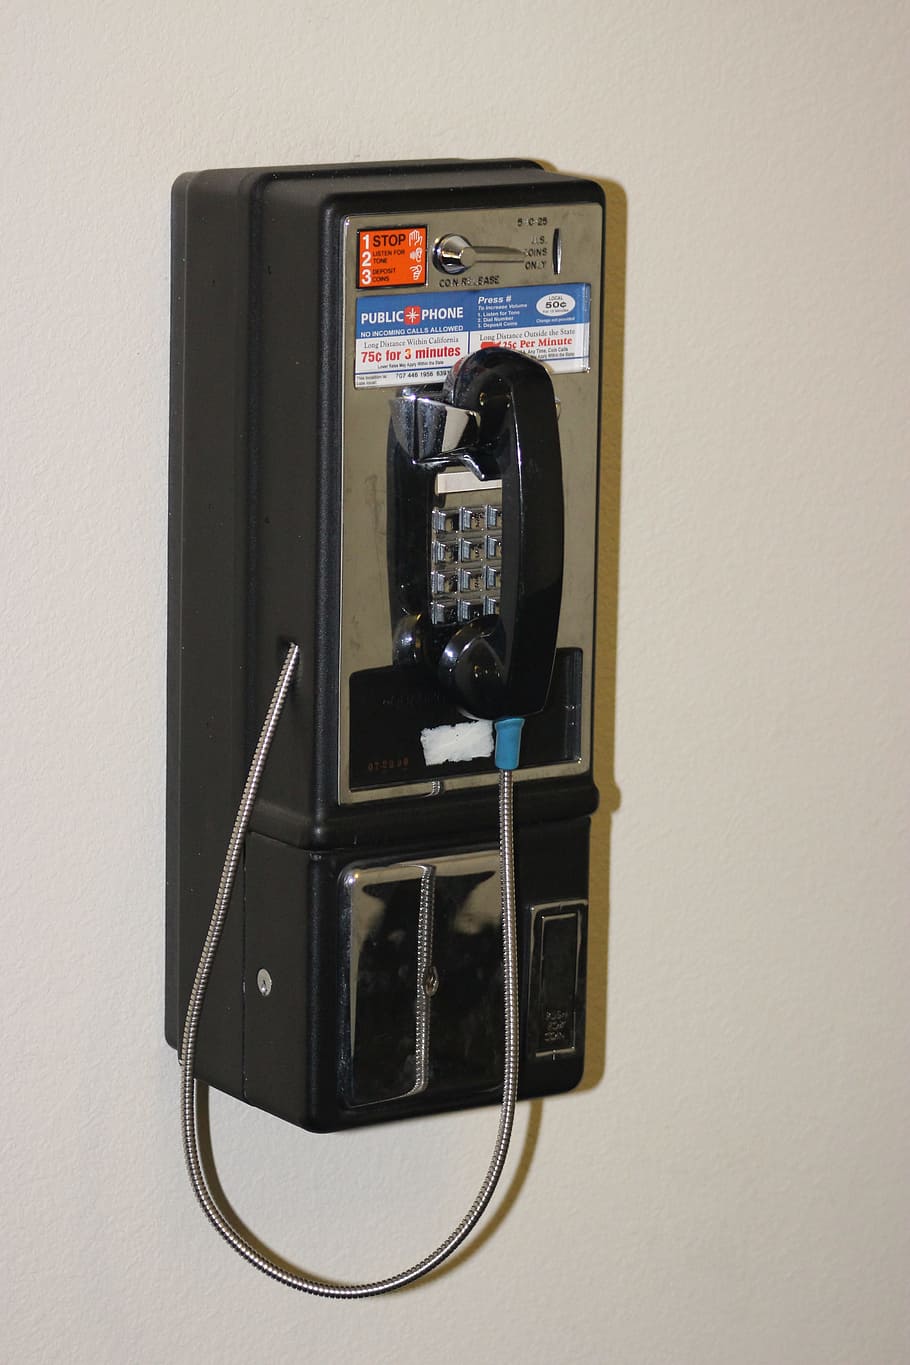 Payphone, Telephone, Public, Public, Phone, communication, communicate